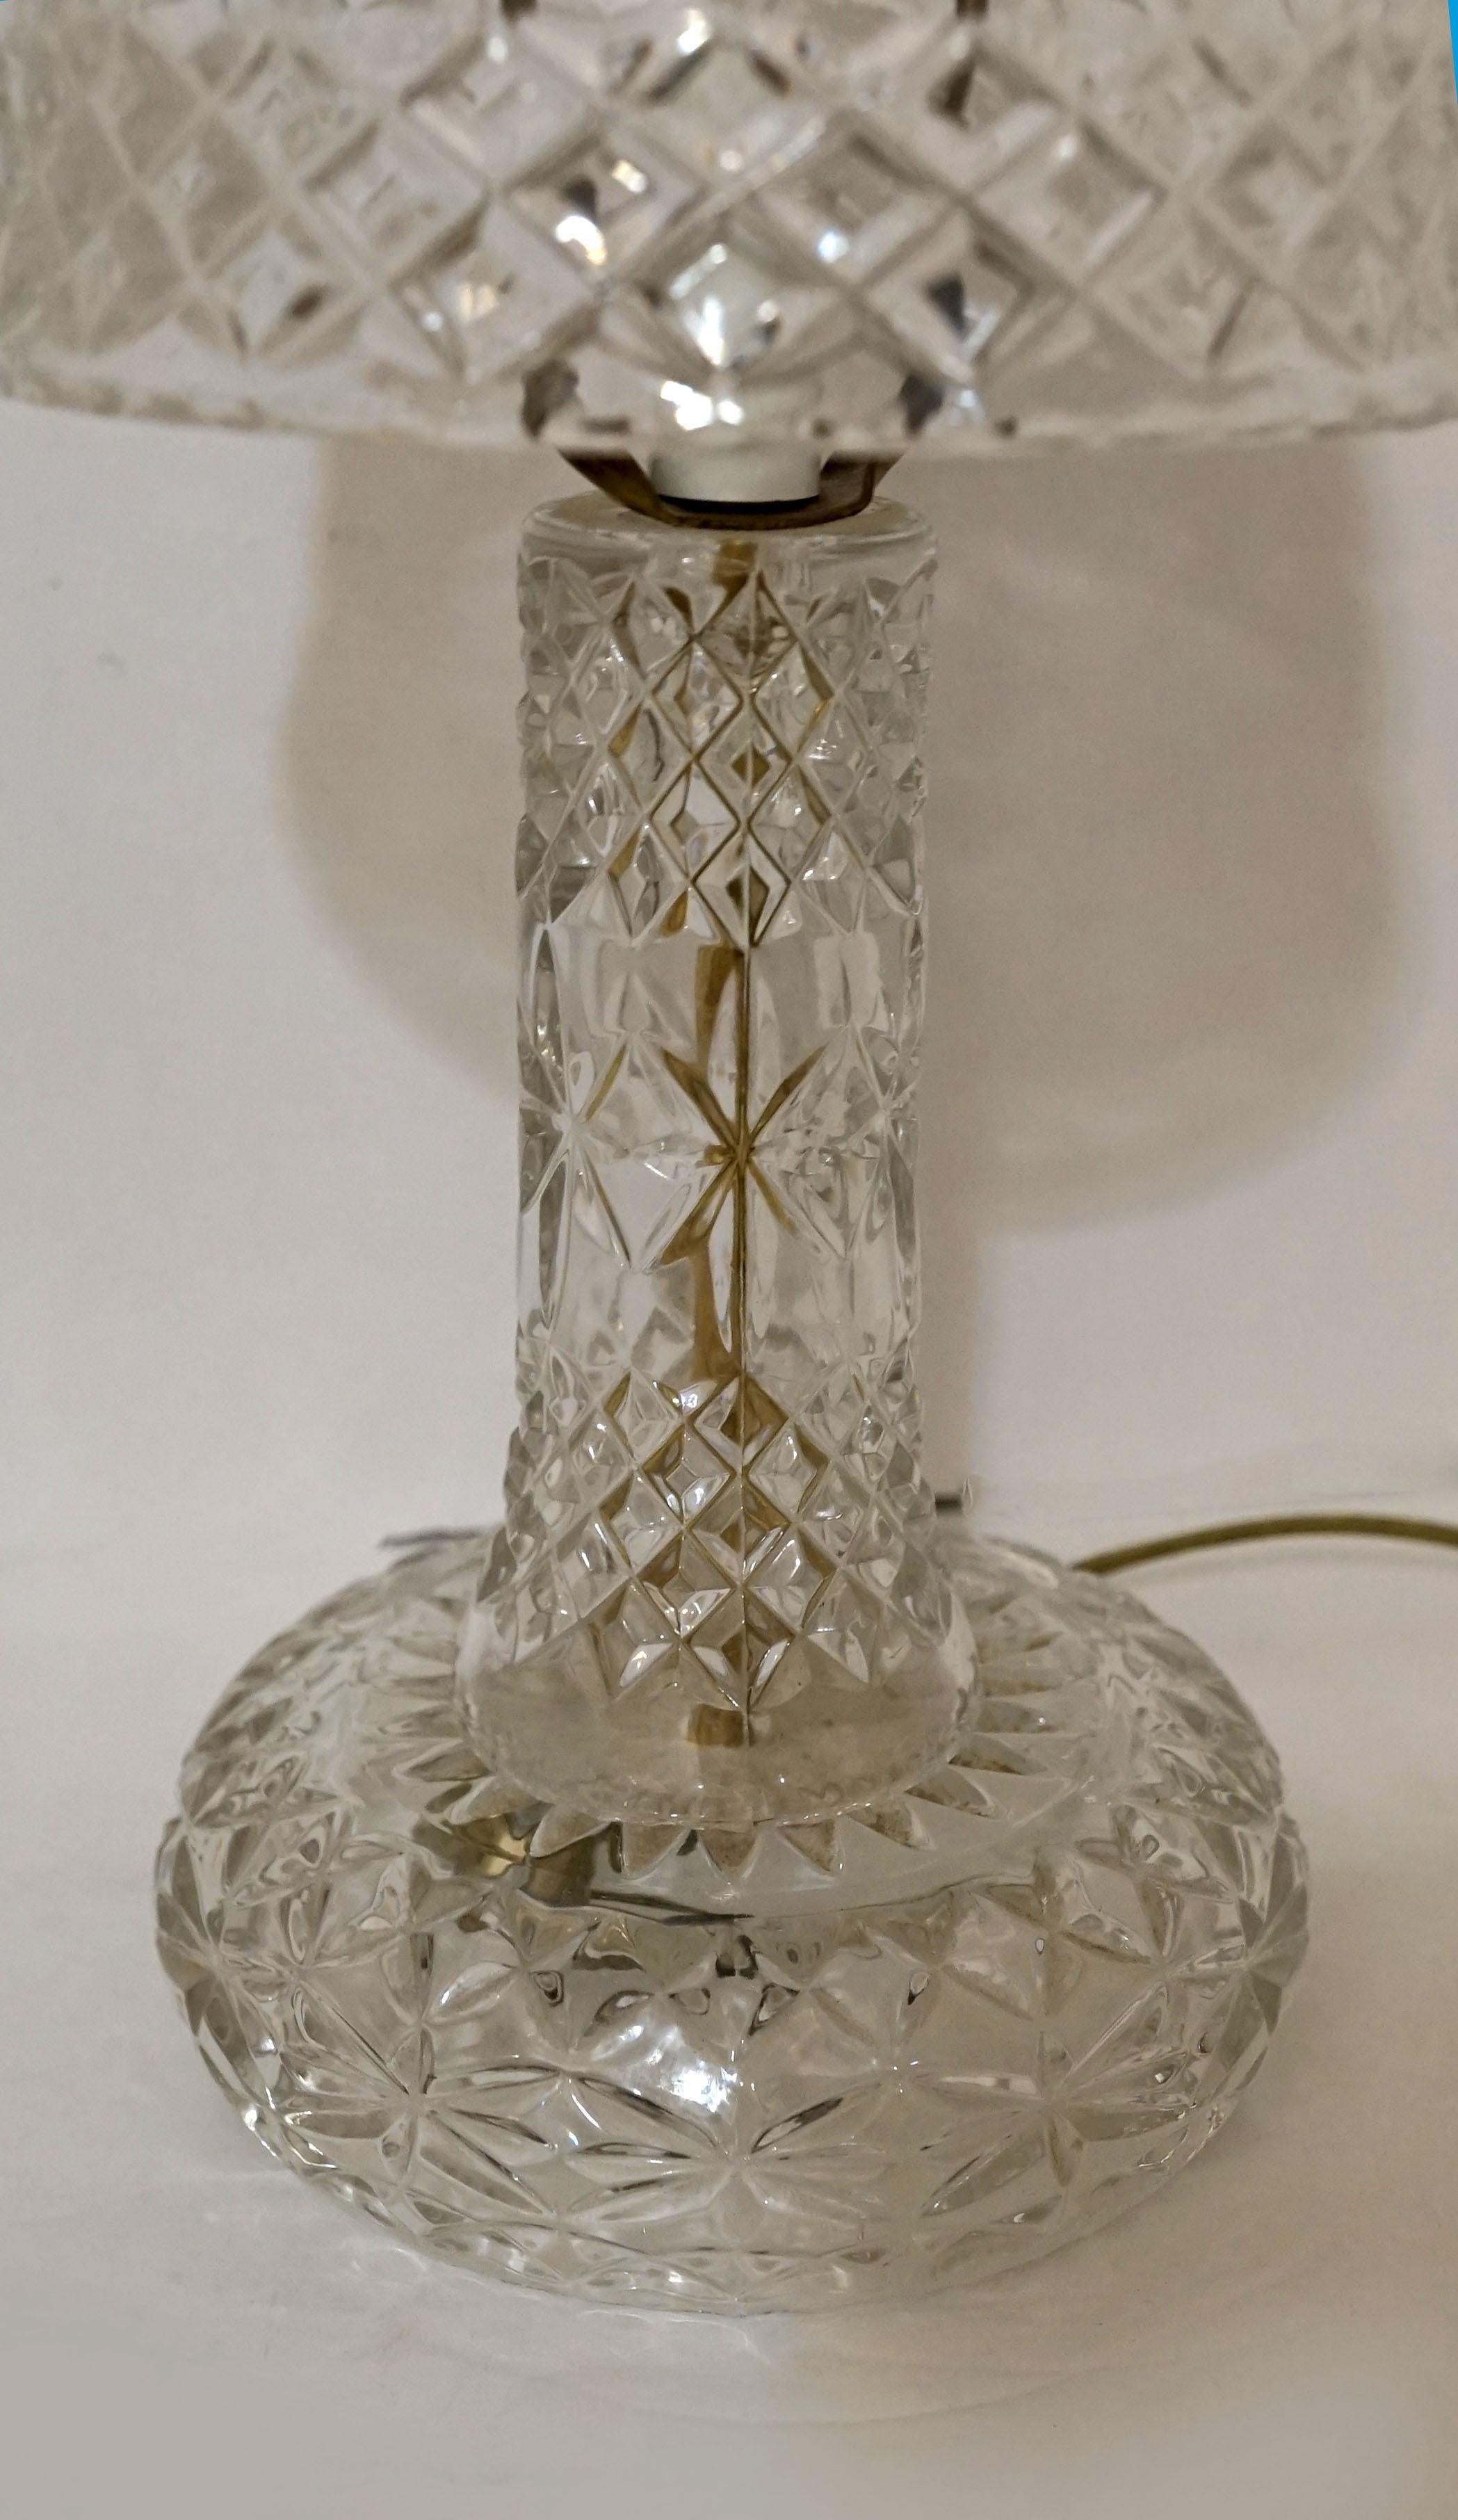 Il s'agit d'une rare lampe en cristal surmontée d'un abat-jour formé comme un chapeau de champignon. La lampe est en cristal plombé pressé et est soit américaine, soit anglaise, et date du milieu du 20e siècle. 
La lampe repose sur un piédestal